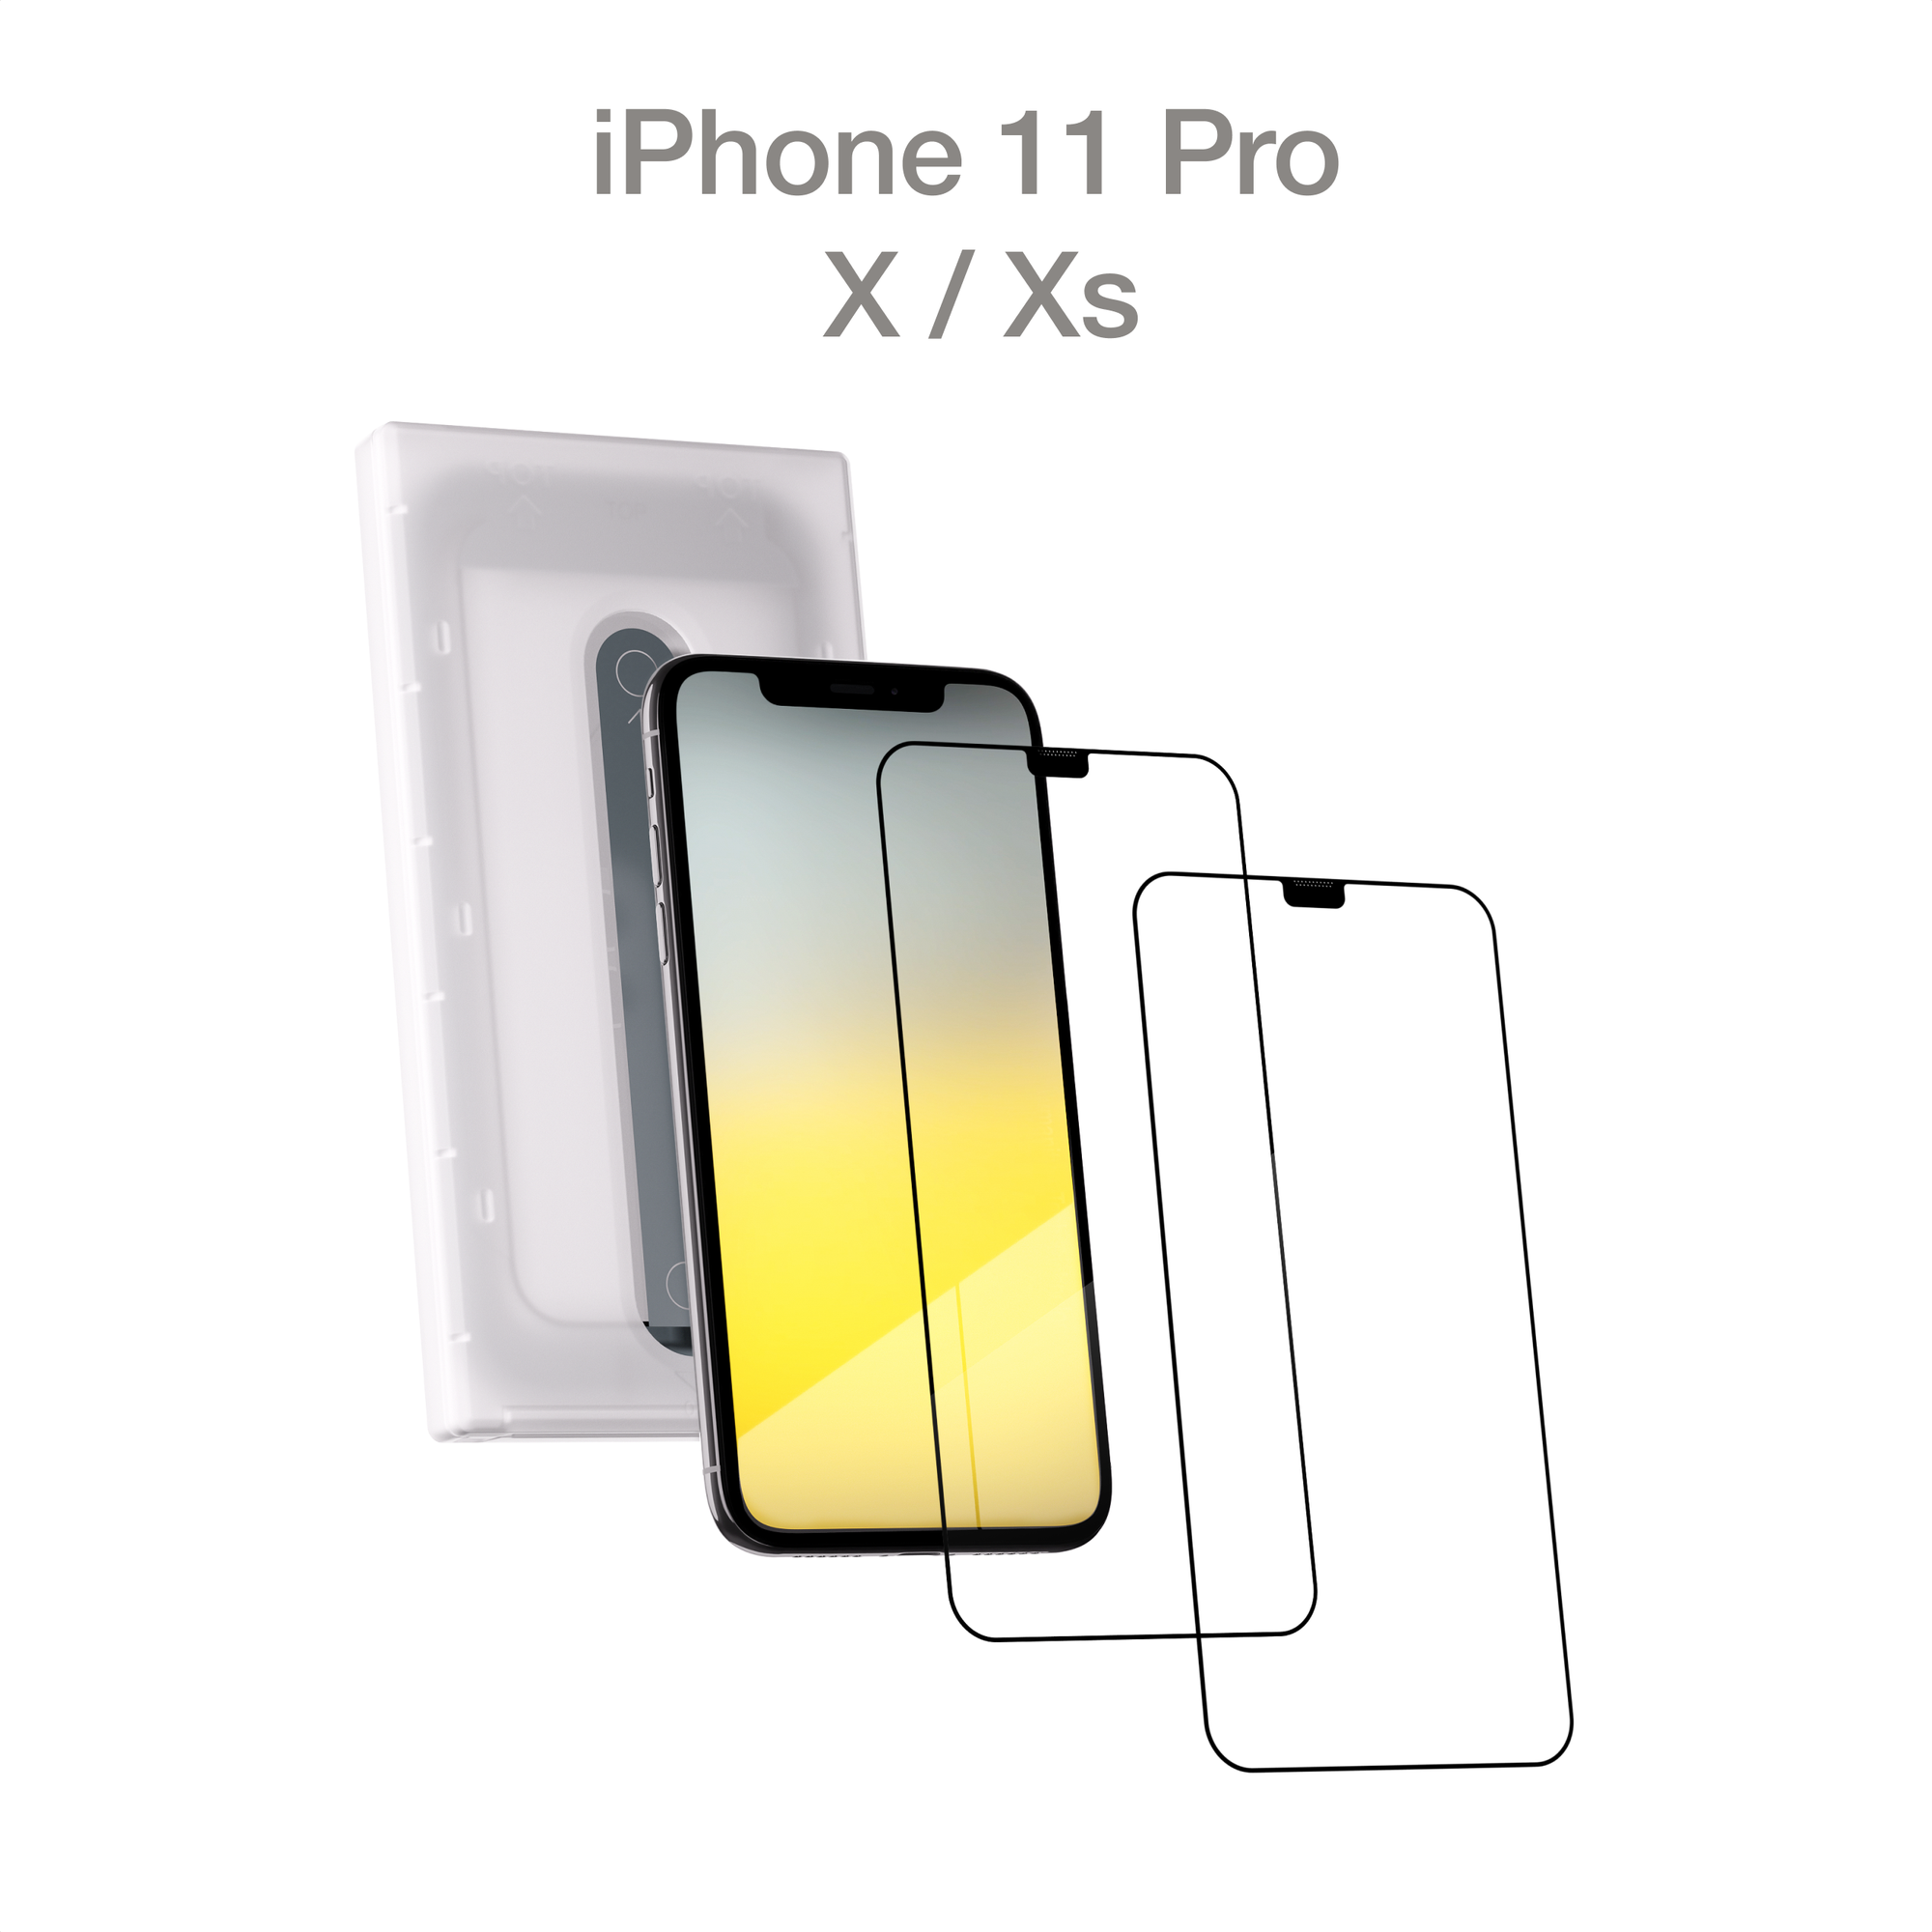 Защитное стекло с аппликатором COMMO (2 шт в комплекте) для Apple iPhone 11 Pro / Apple iPhone X, Apple iPhone Xs, прозрачное